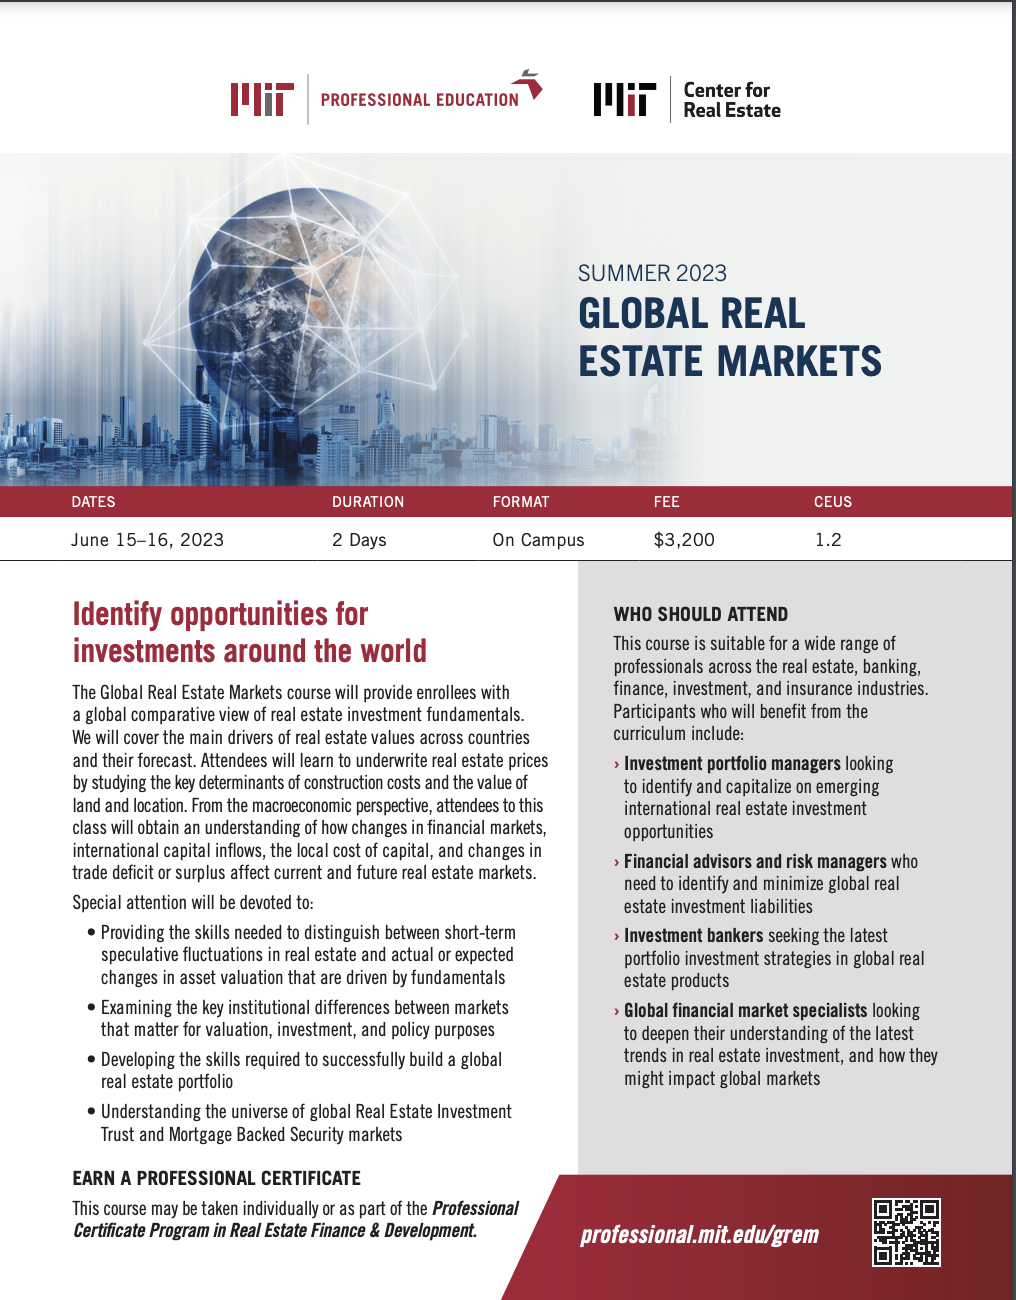 Global Real Estate Markets - Brochure Image